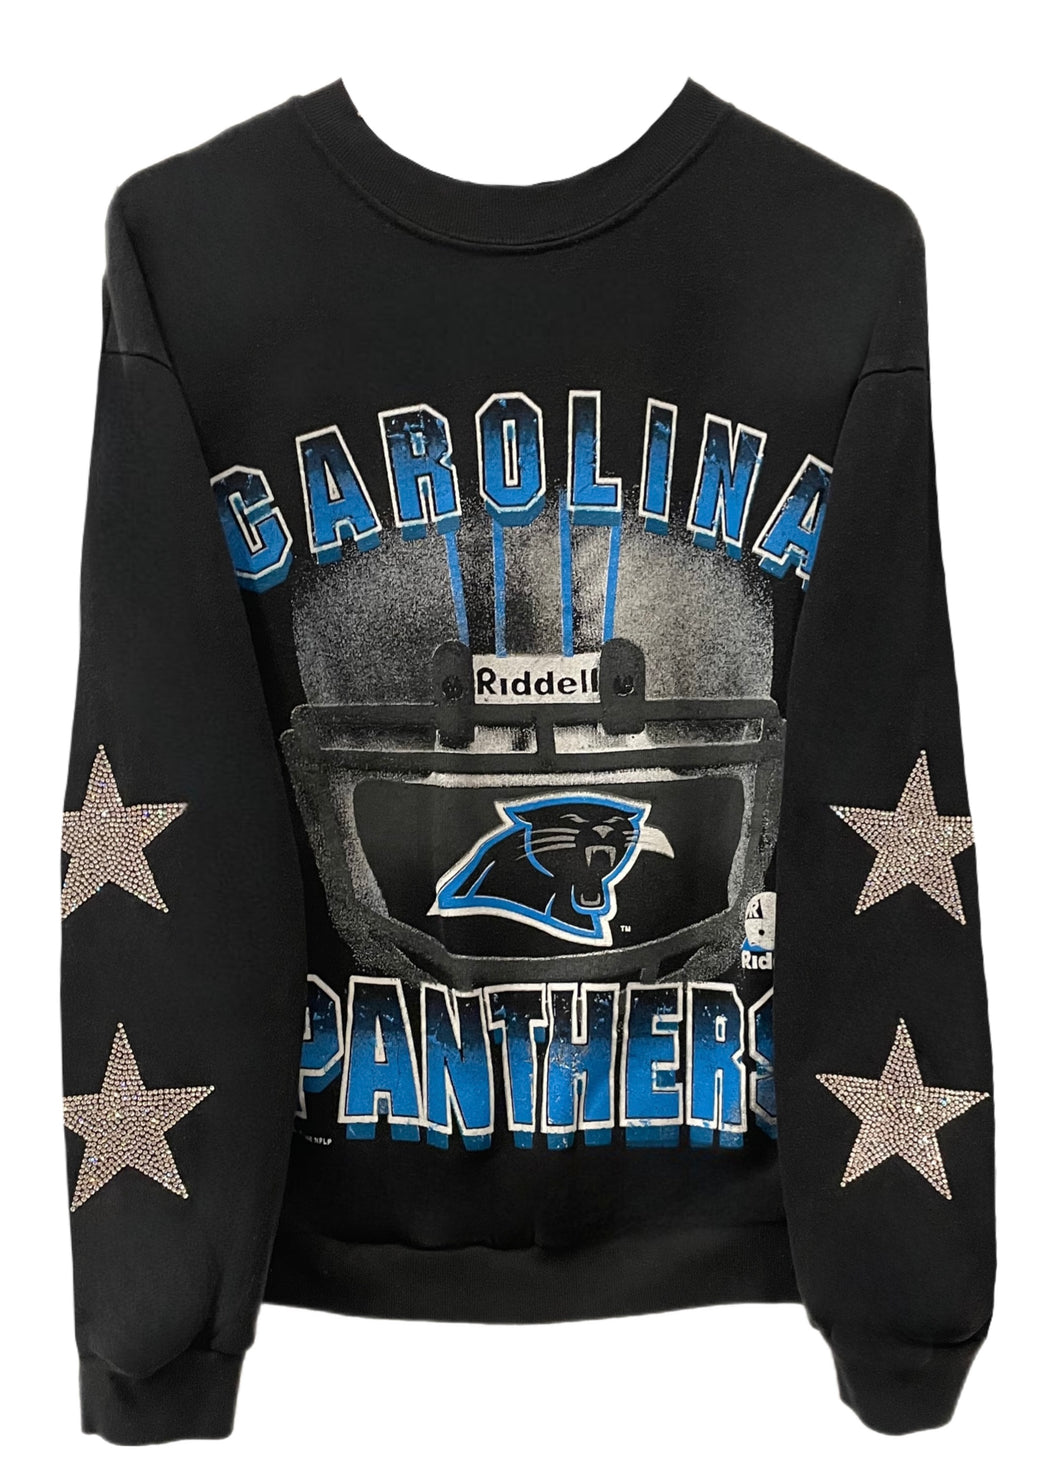 Carolina Panthers, NFL One of a KIND Vintage NFL Sweatshirt with Crystal Star Design